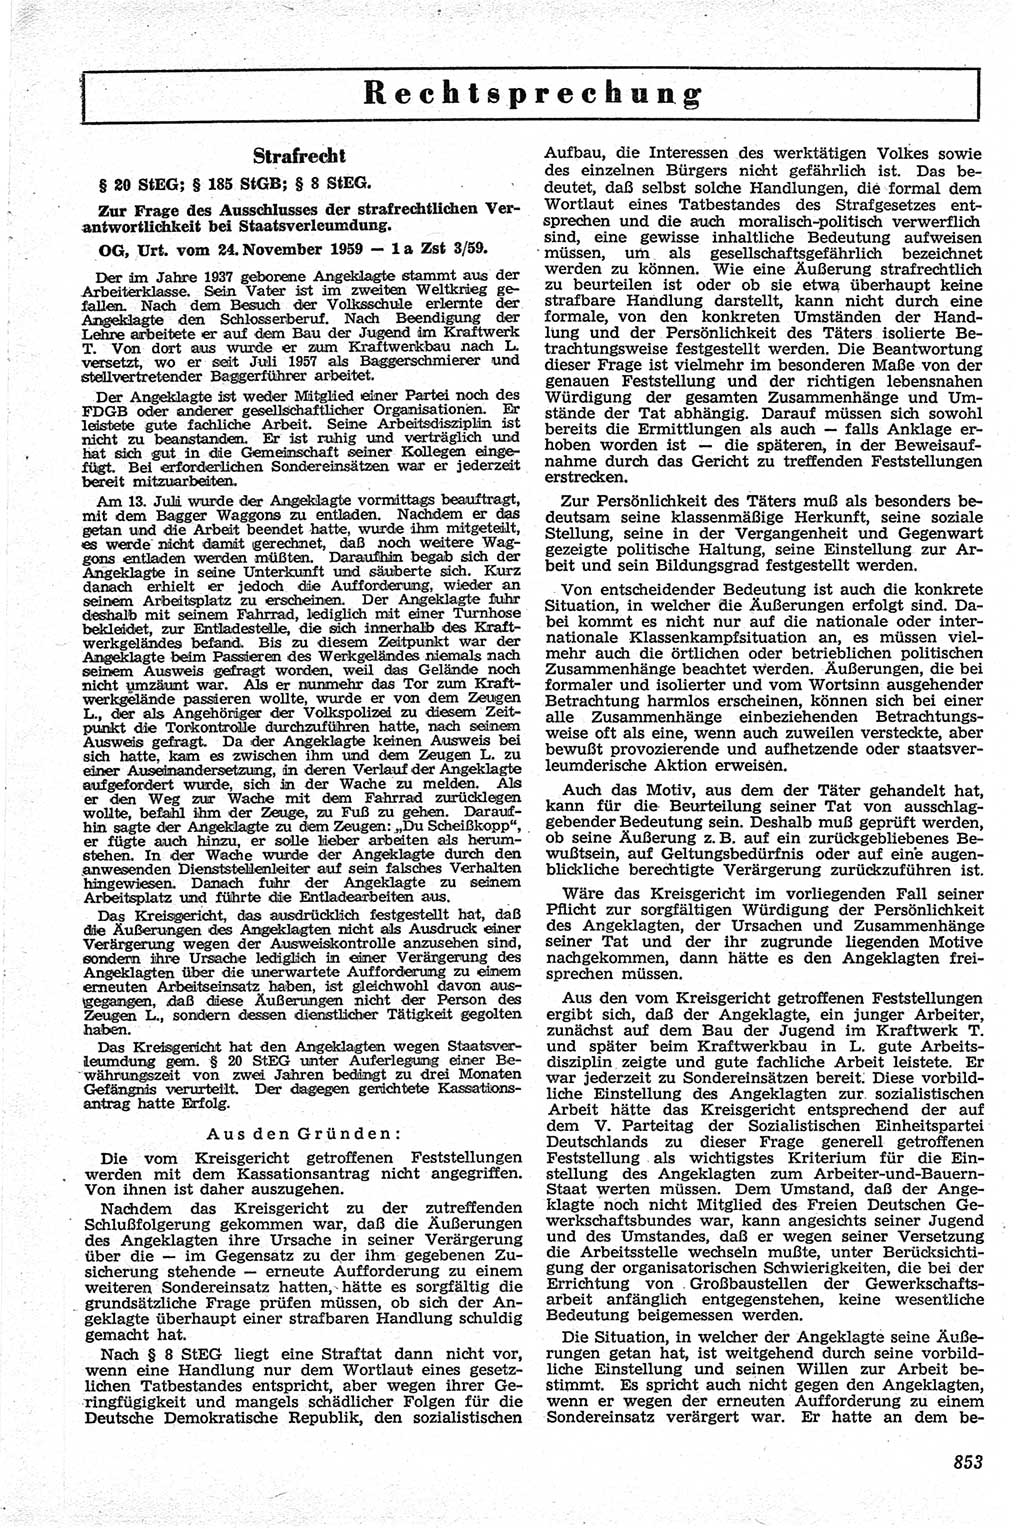 Neue Justiz (NJ), Zeitschrift für Recht und Rechtswissenschaft [Deutsche Demokratische Republik (DDR)], 13. Jahrgang 1959, Seite 853 (NJ DDR 1959, S. 853)